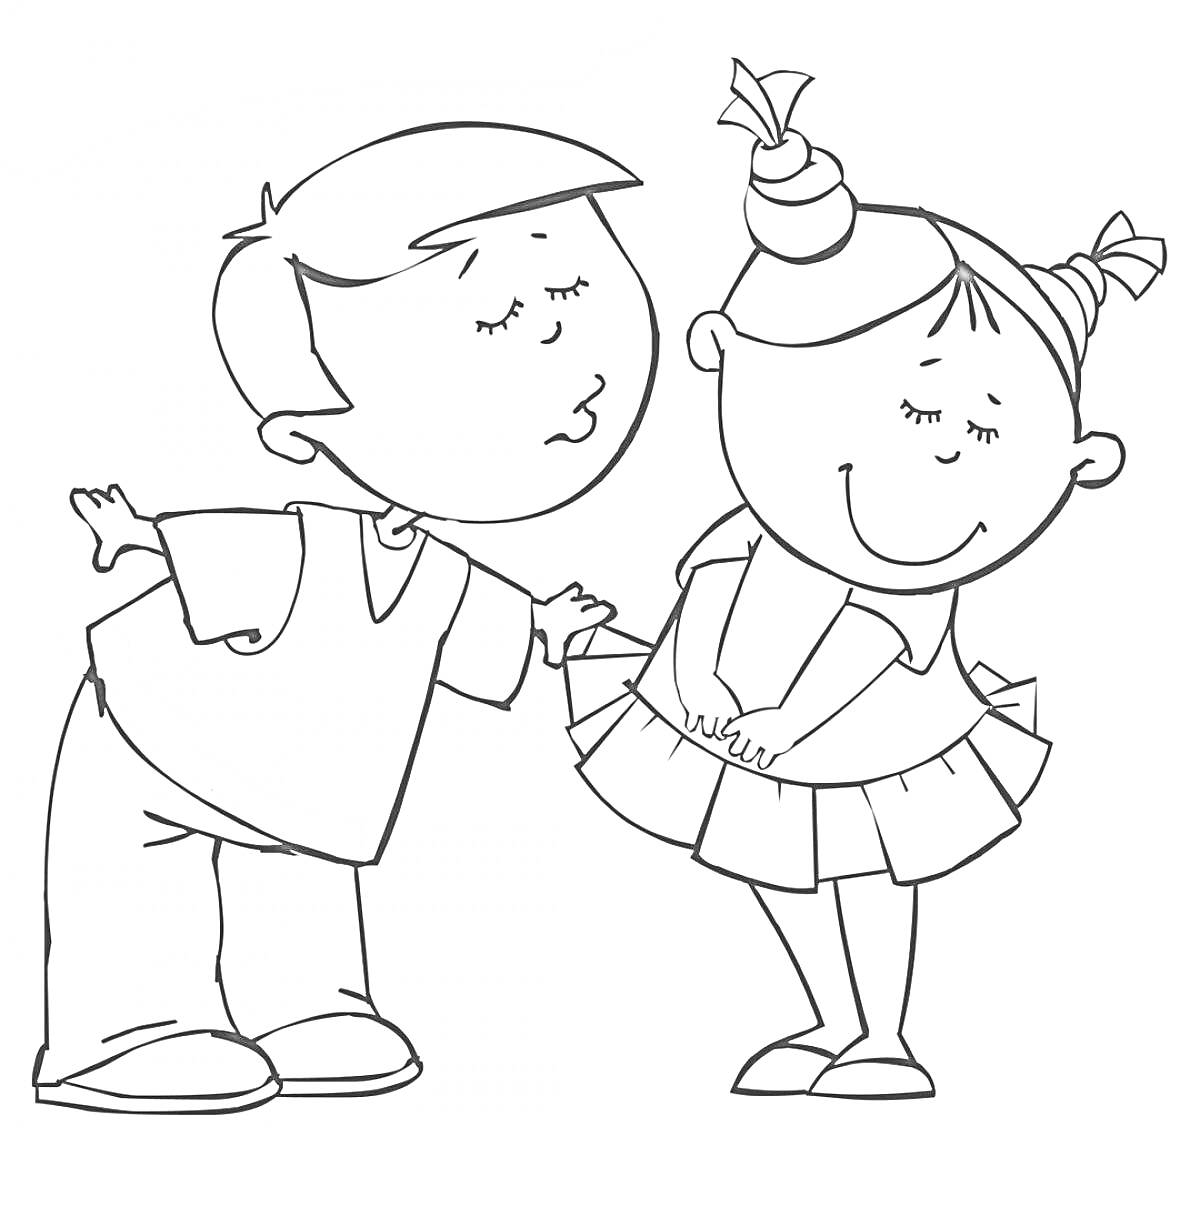 Раскраска Мальчик и девочка с закрытыми глазами, мальчик наклоняется для поцелуя девочки в платье с хвостиками